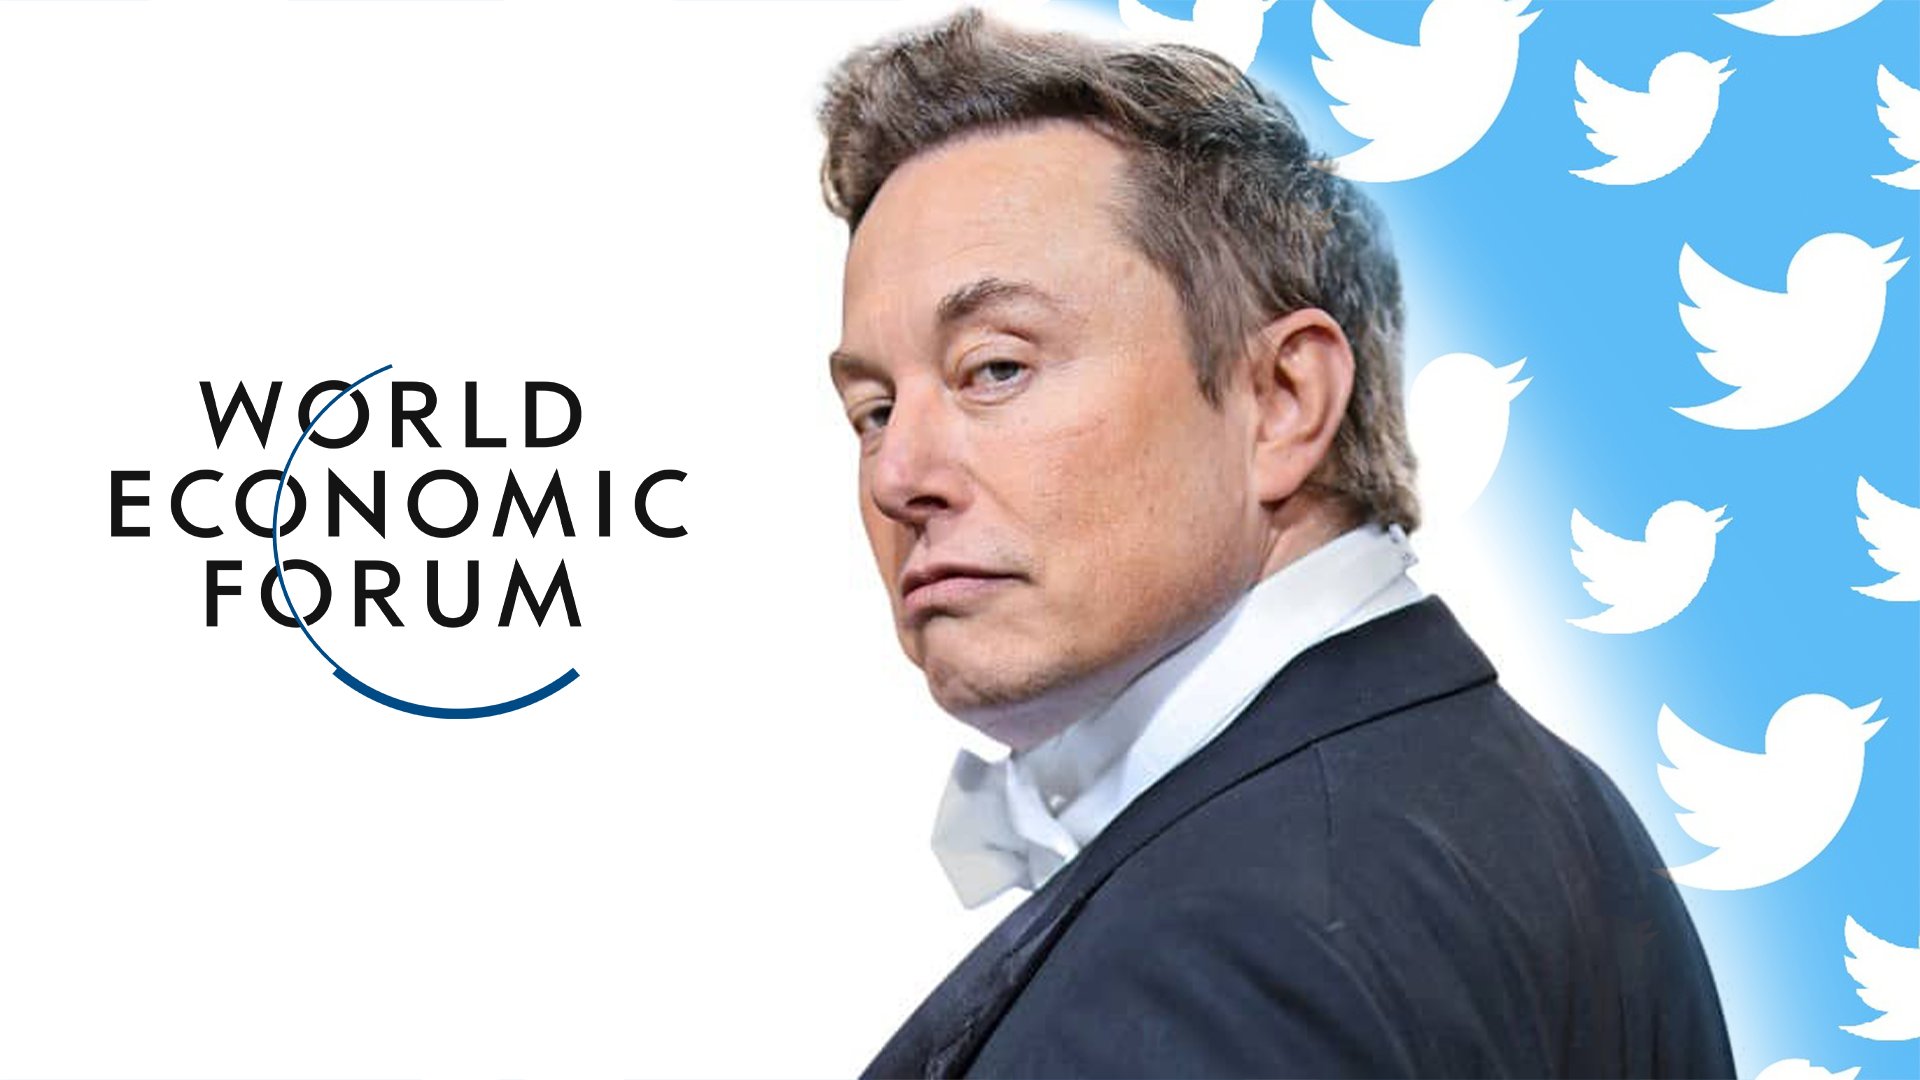 Il World Economic Forum di Klaus Schwab rimuove Twitter dalla sua pagina